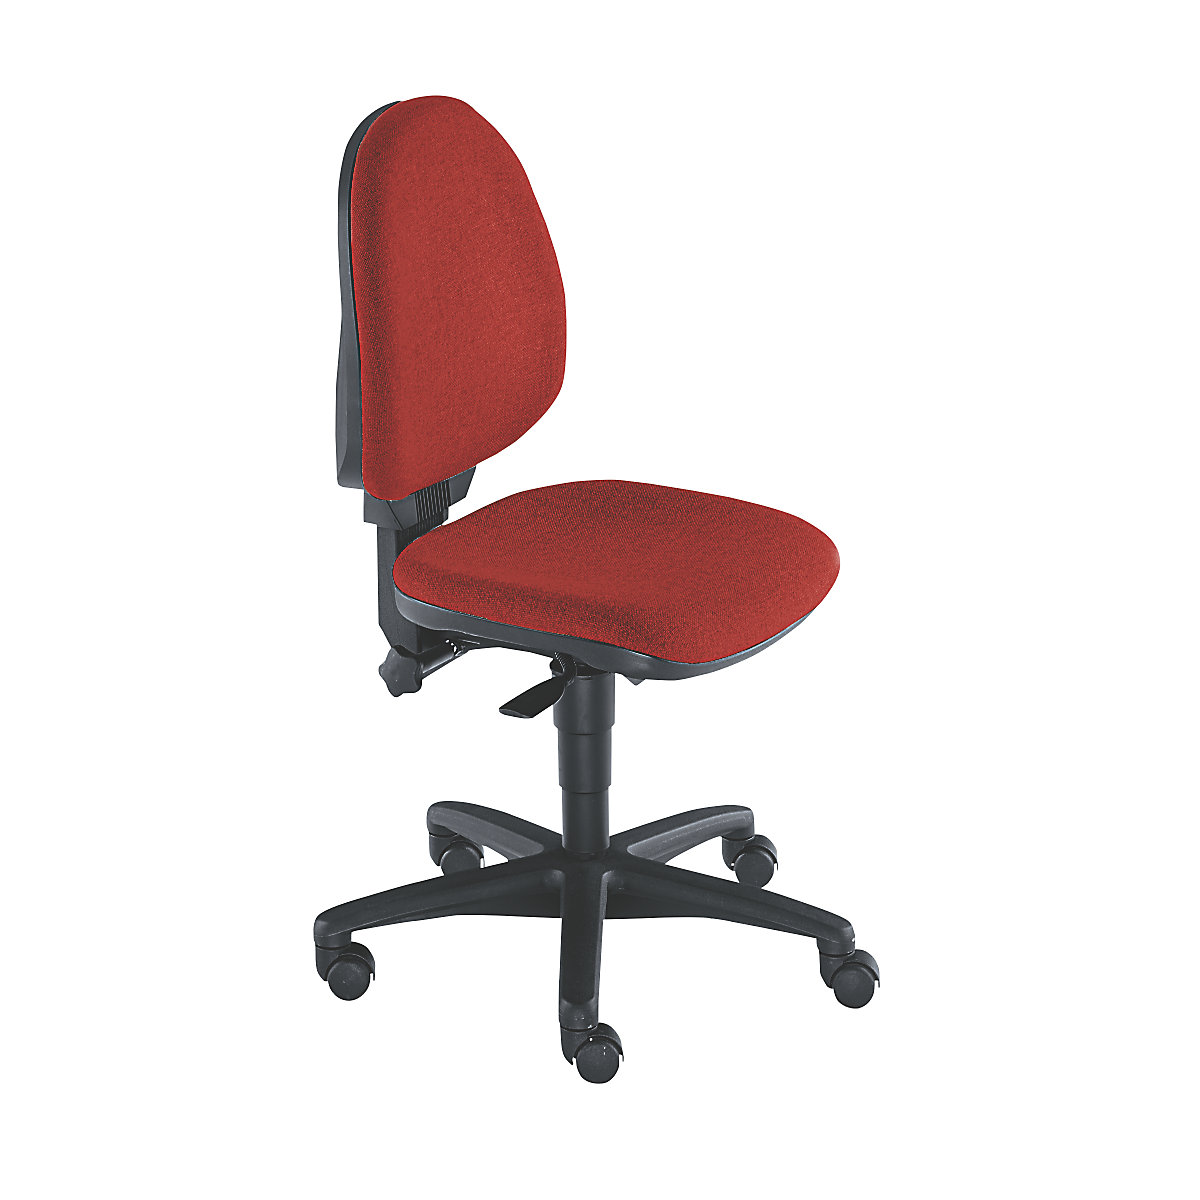 Standardní otočná židle - Topstar